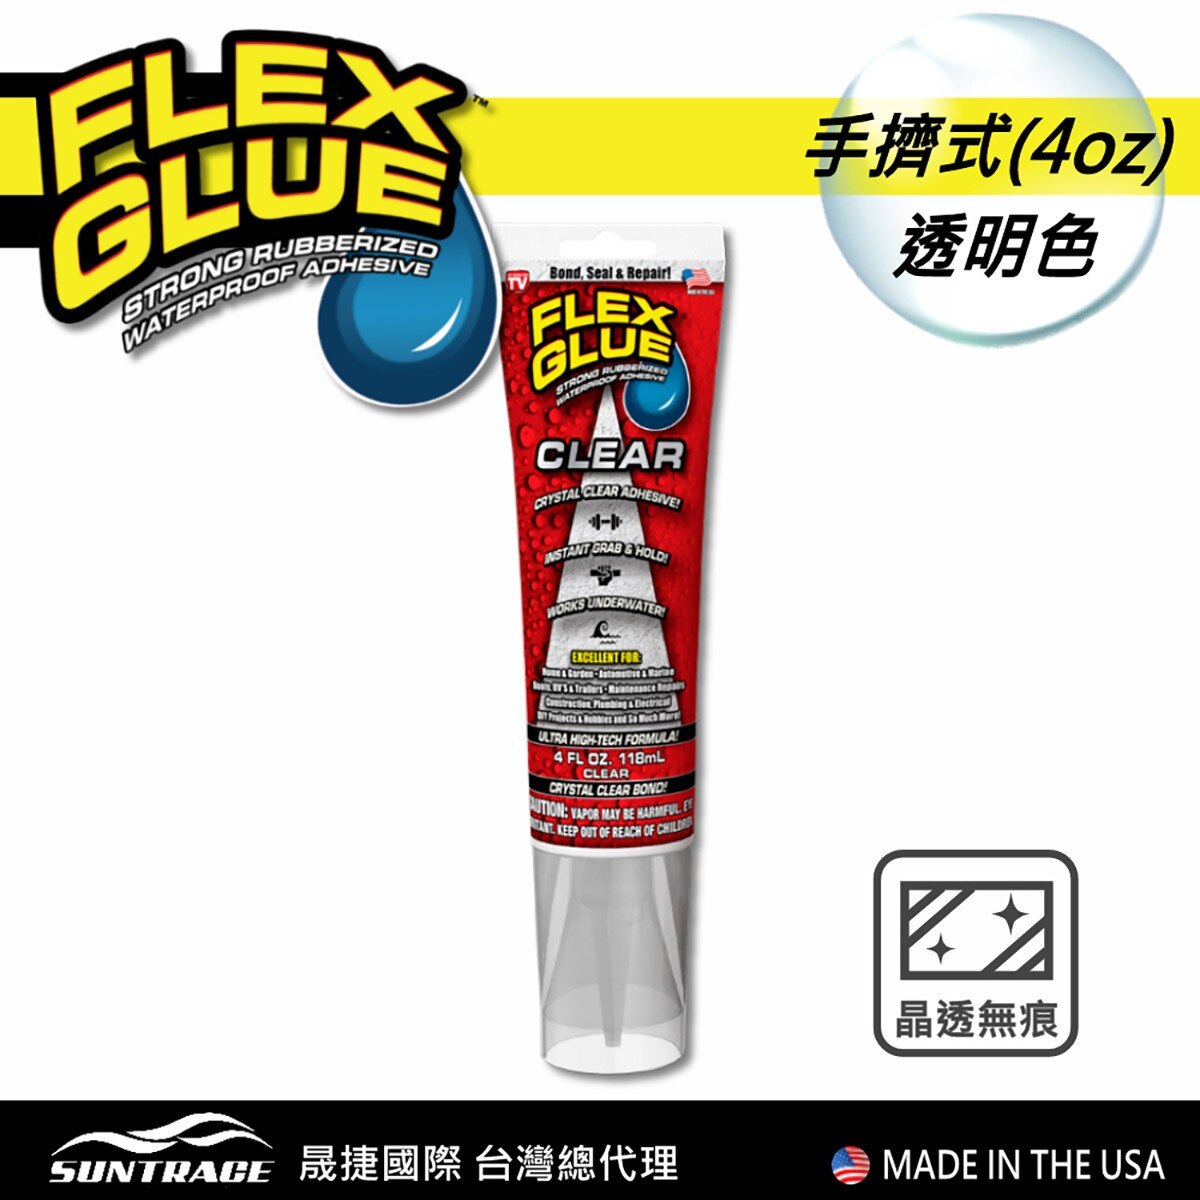 美國FLEX GLUE大力固化膠透明色手擠式包裝，速乾配方、接著後快速固化，穩固牢靠。強力黏著力，不垂流、不乾裂，適用各類修補。